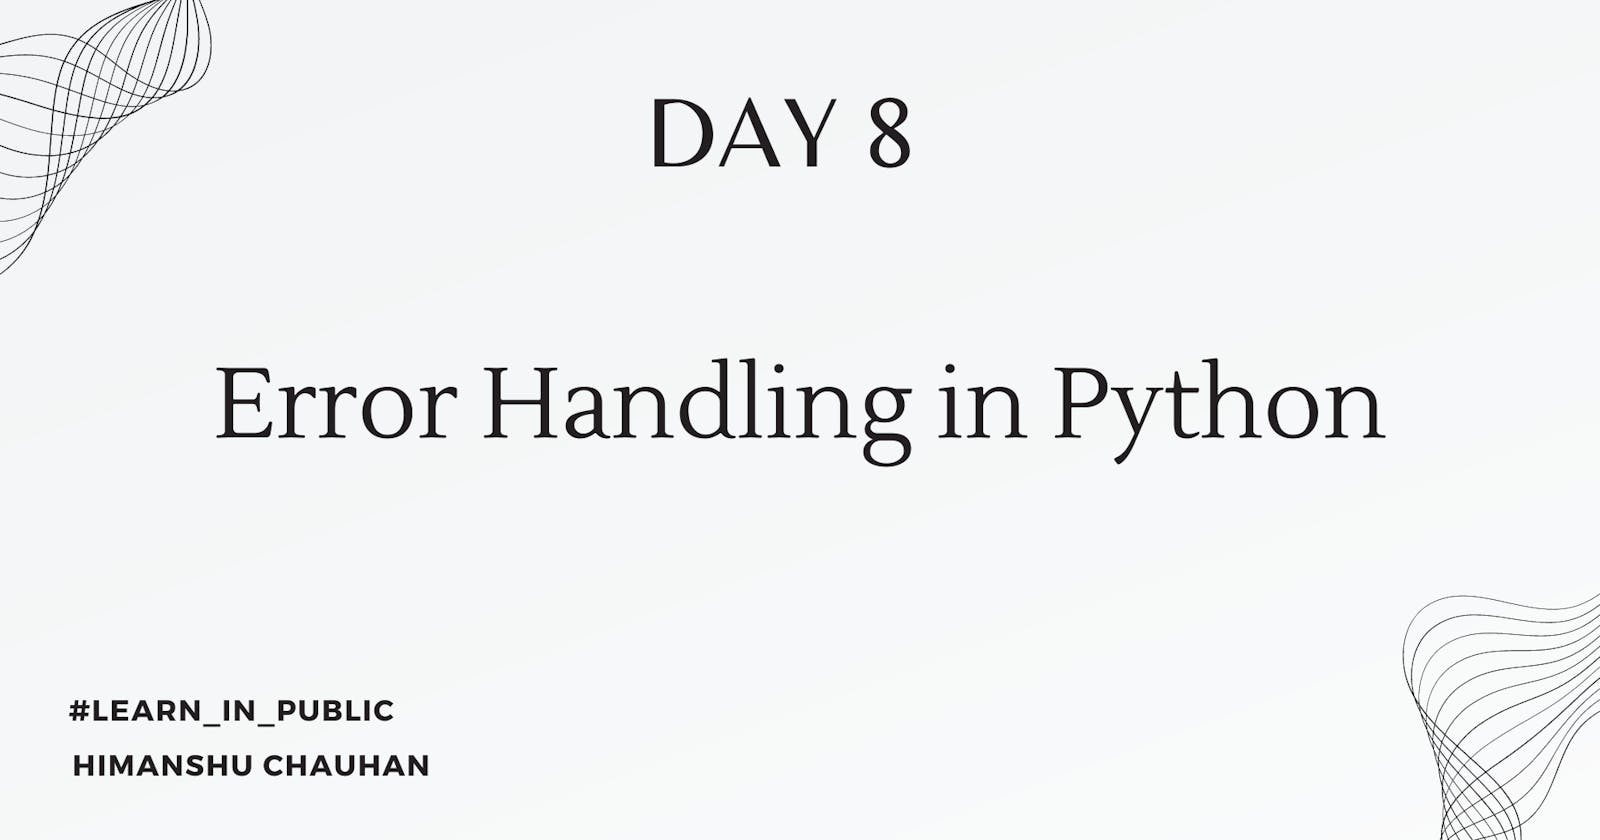 Day 8: Error Handling in Python